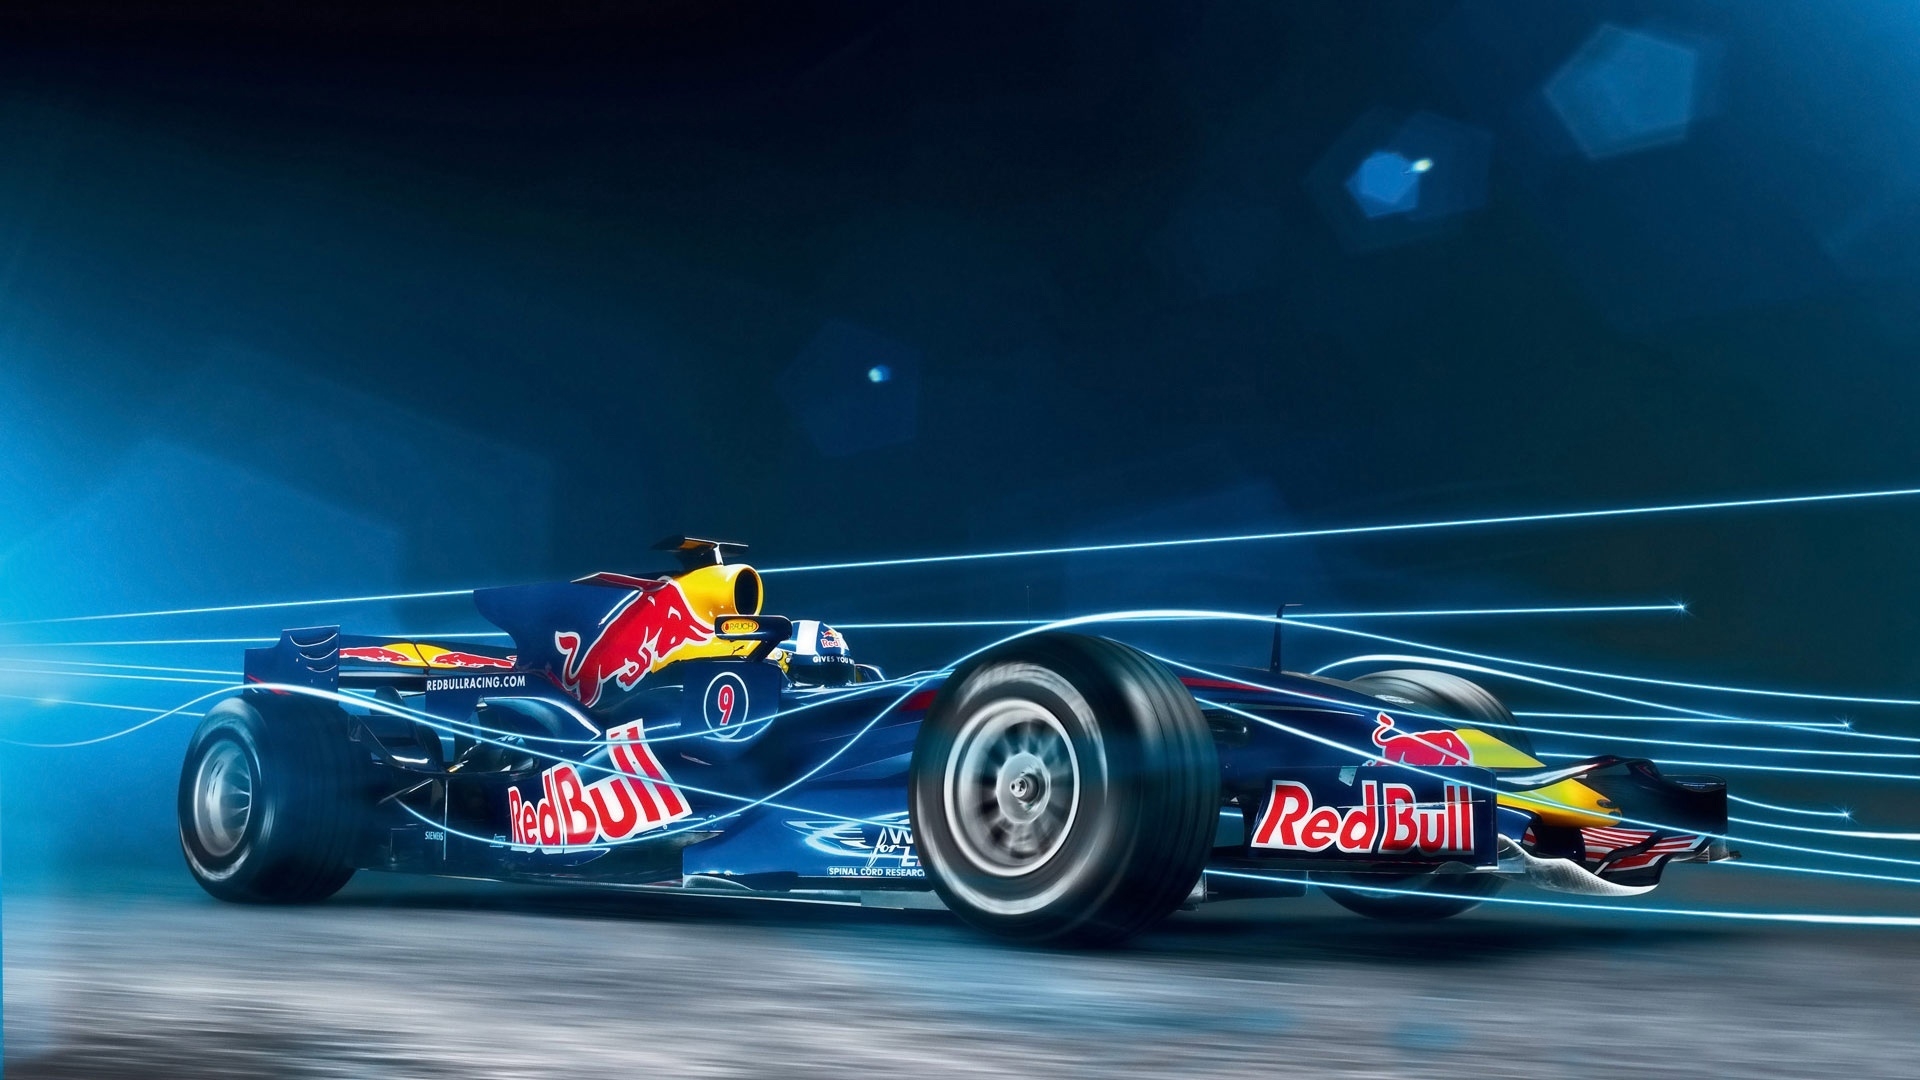 Red Bull Formula 1 for 1920 x 1080 HDTV 1080p resolution